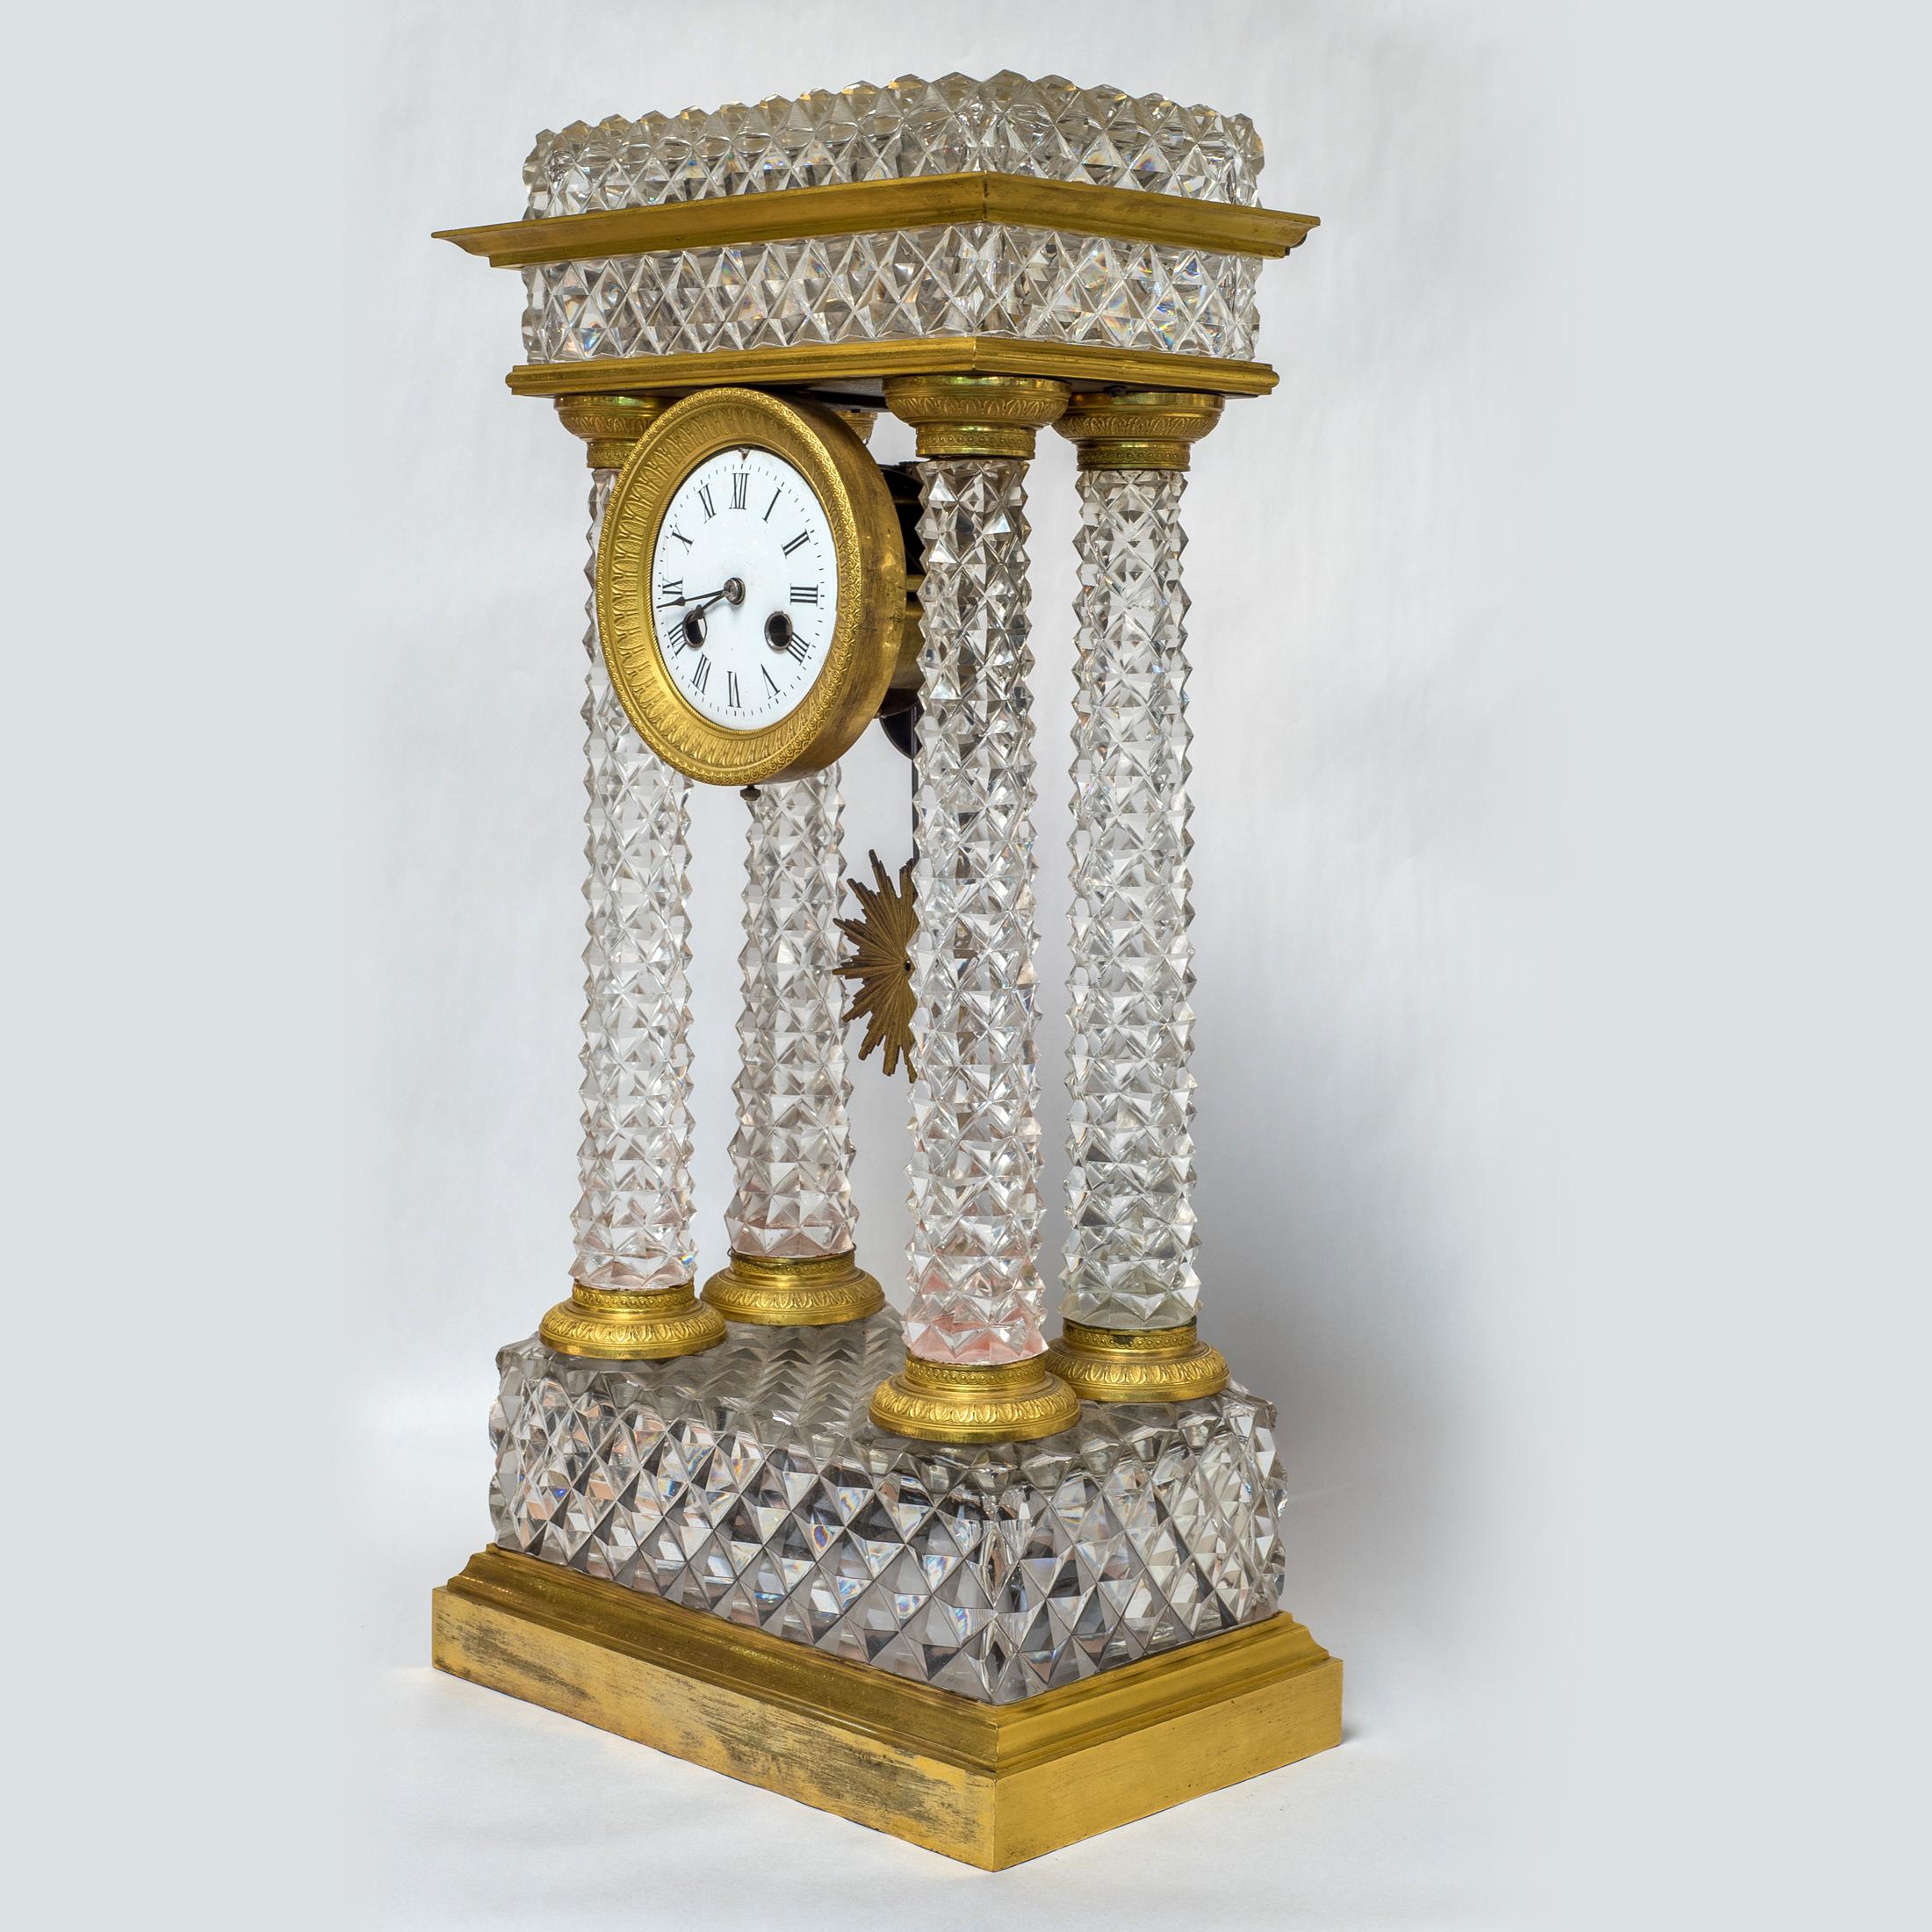 Pendule de cheminée portique en bronze doré et verre taillé de Charles X

Date : vers 1825
Origine : Français
Dimension : 19 x 9 3/4 x 6 pouces.